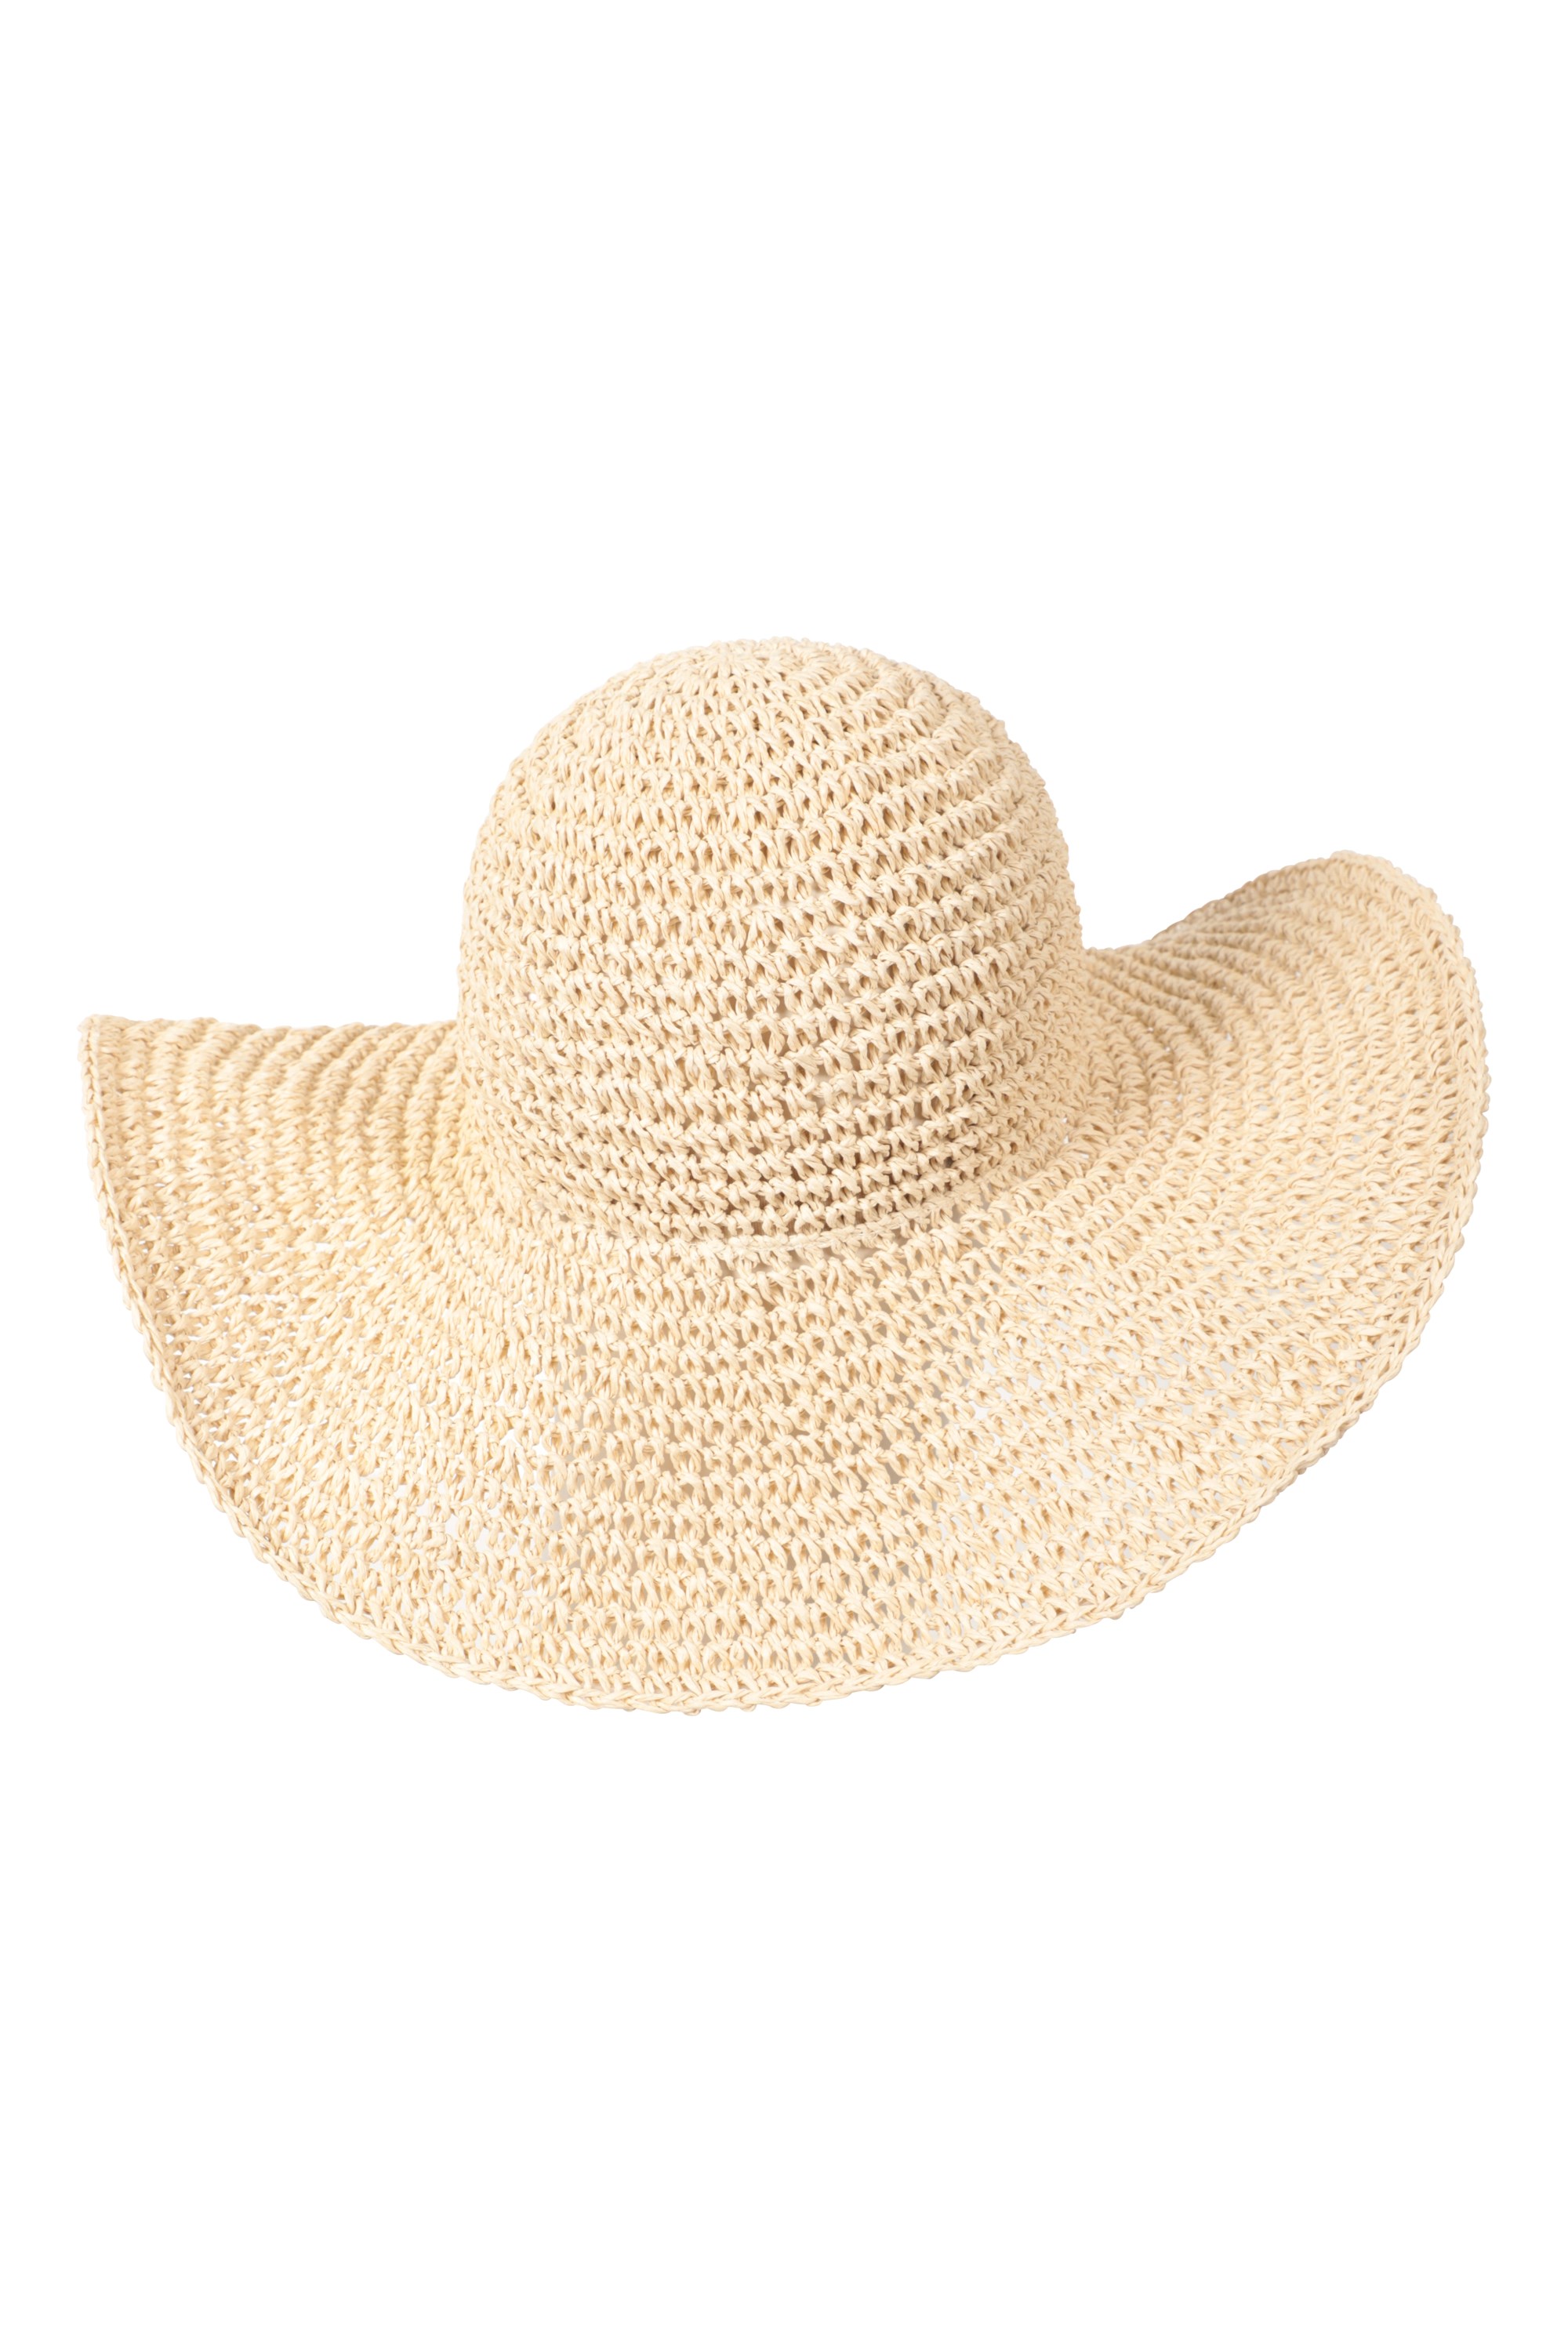 Folding Straw Hat , Wide Brim Floppy Summer Hats , Woman Seaside Beach Hat, Sun  Hat -  UK